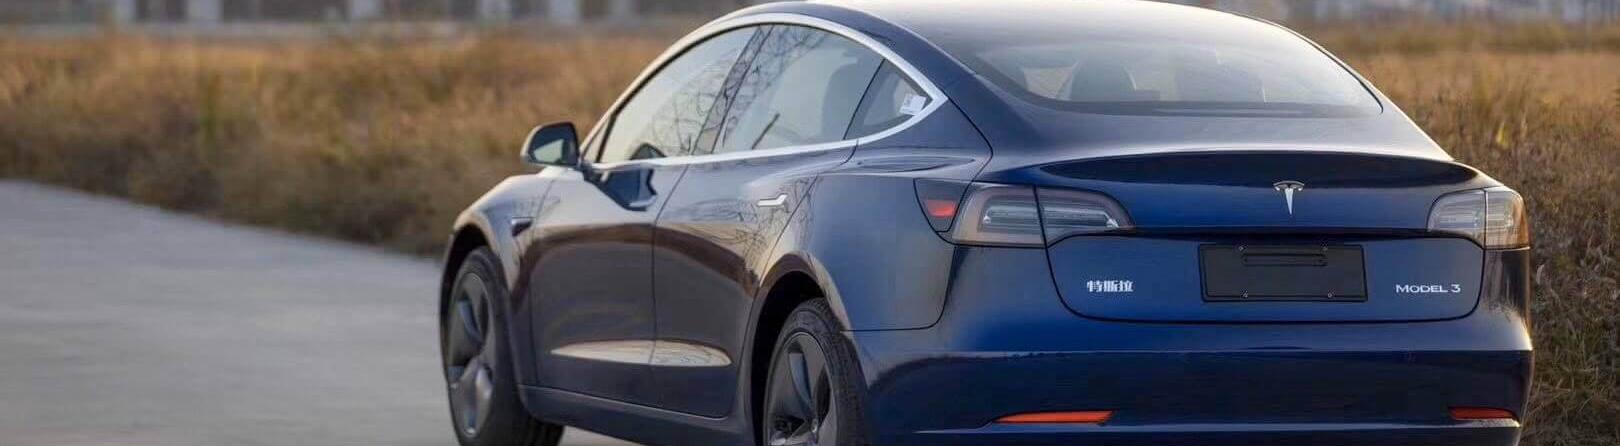 Власти Калифорнии подали в суд на Tesla из-за токсичных отходов 